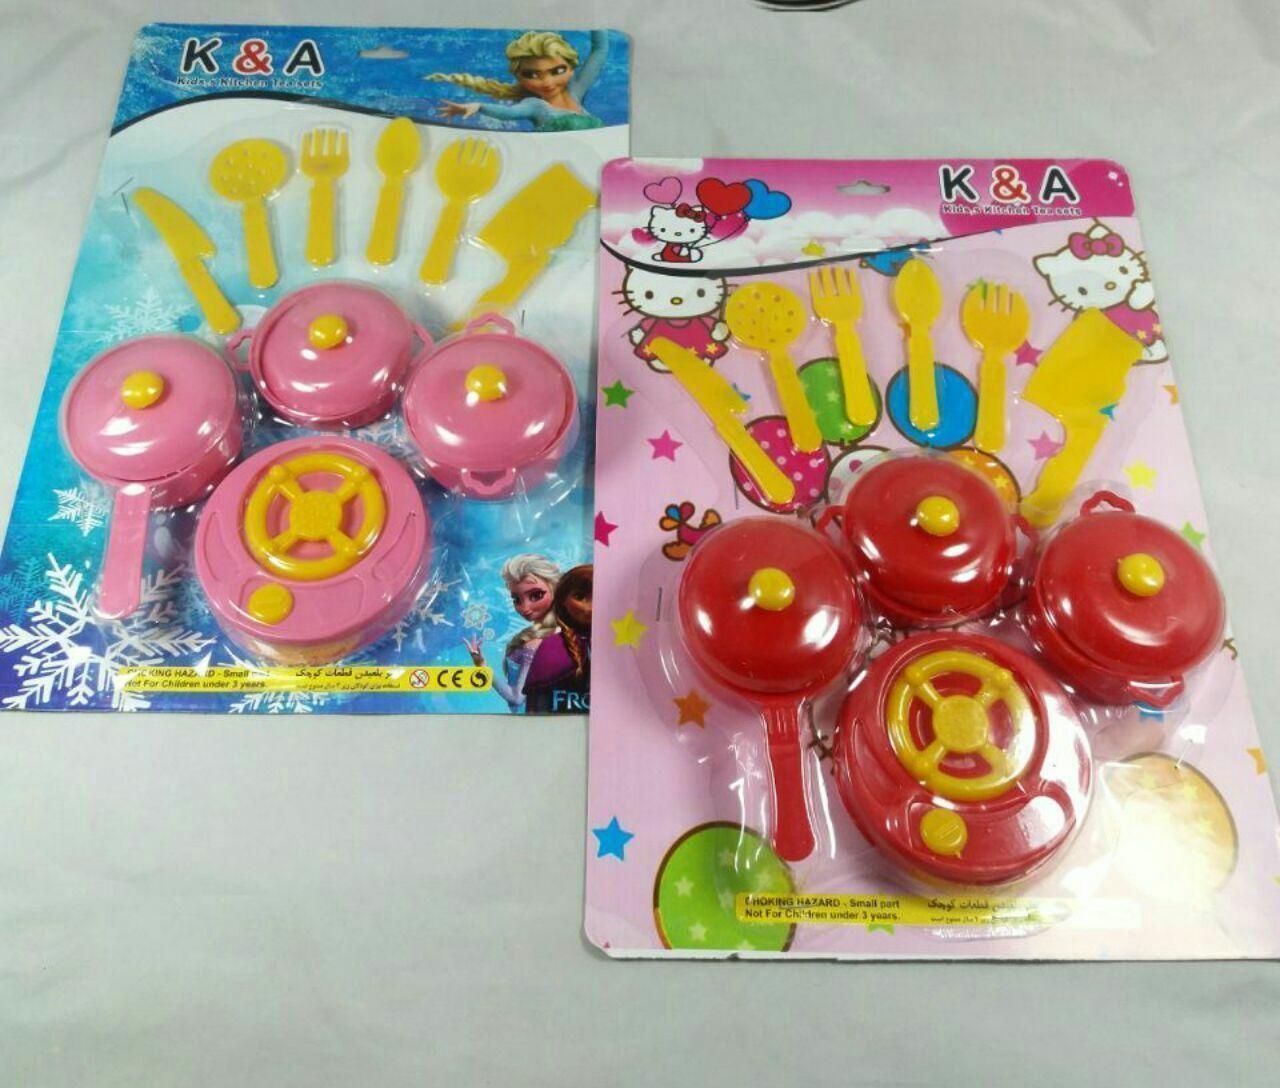 پخش اسباب بازی کارخانه کارواندیشه  خرید و فروش عمده انواع اسباب بازی سرگرمی کودکان